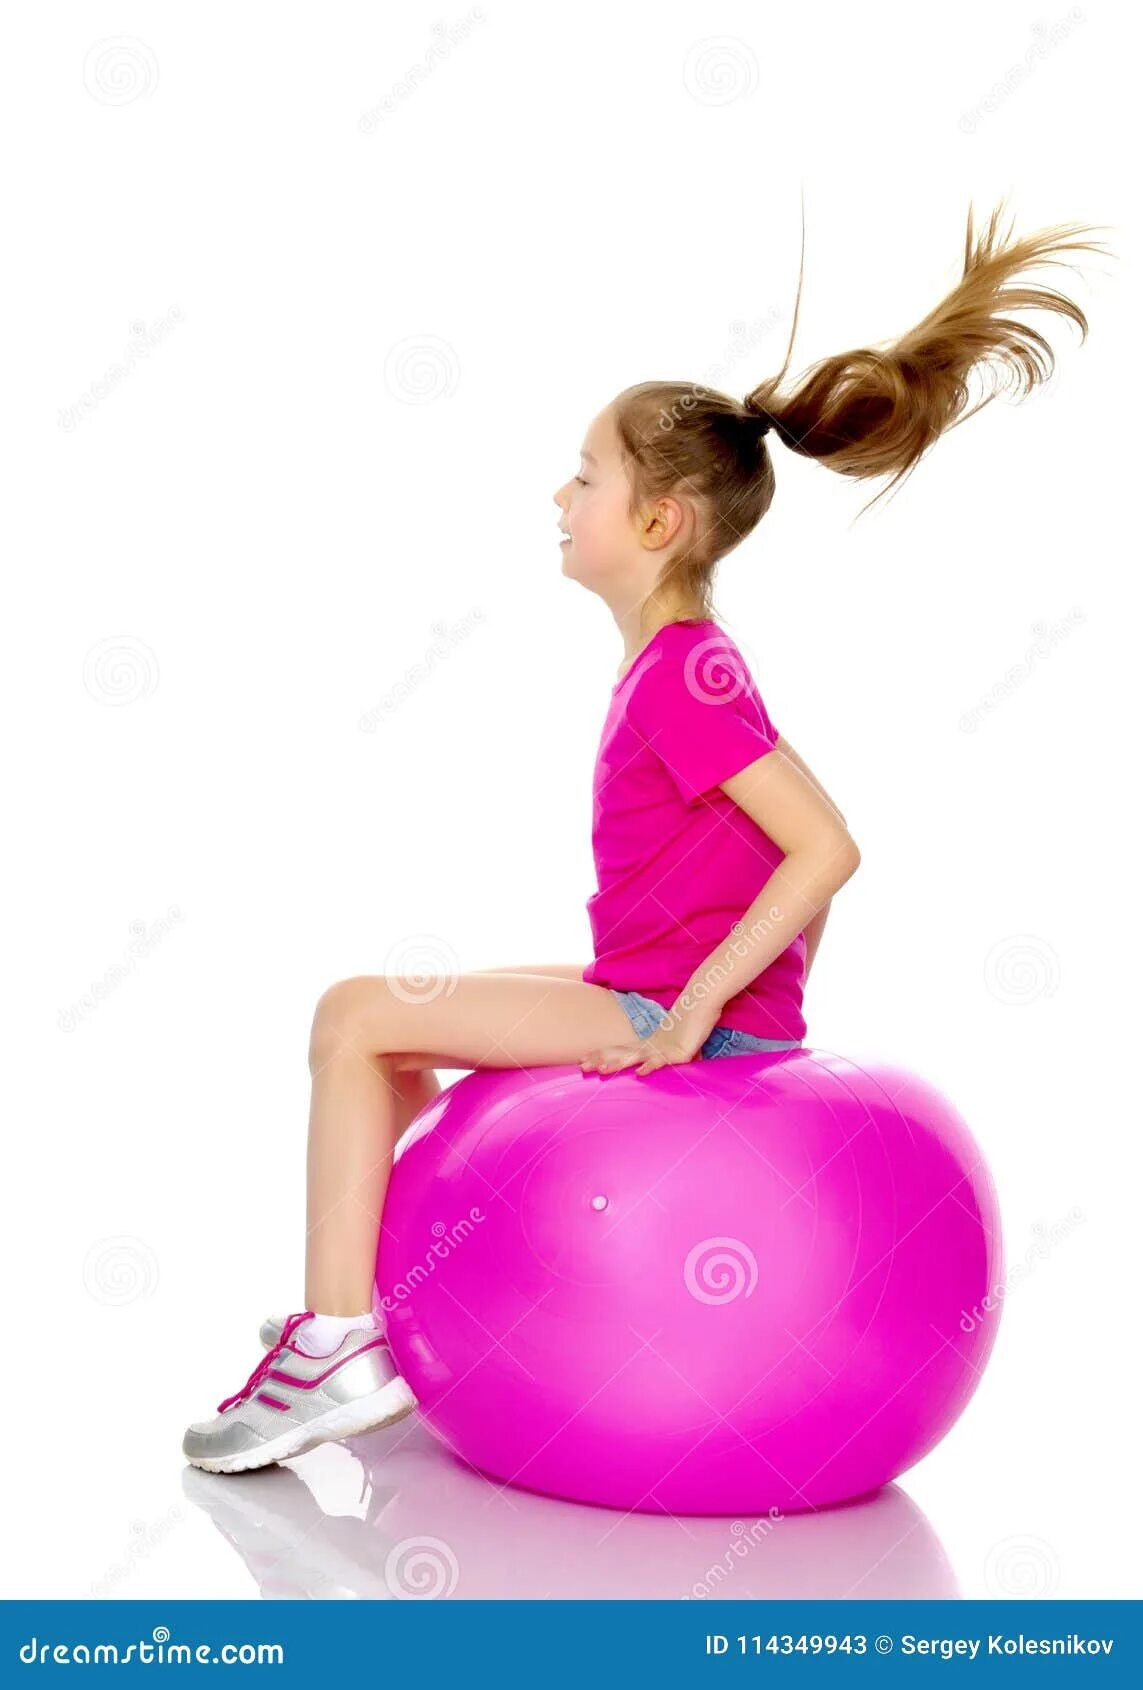 Девочка с мячом. Маленькая девочка мяч для фитнеса. Девушка сидит на шаре. Девочка прыгает на мячике.